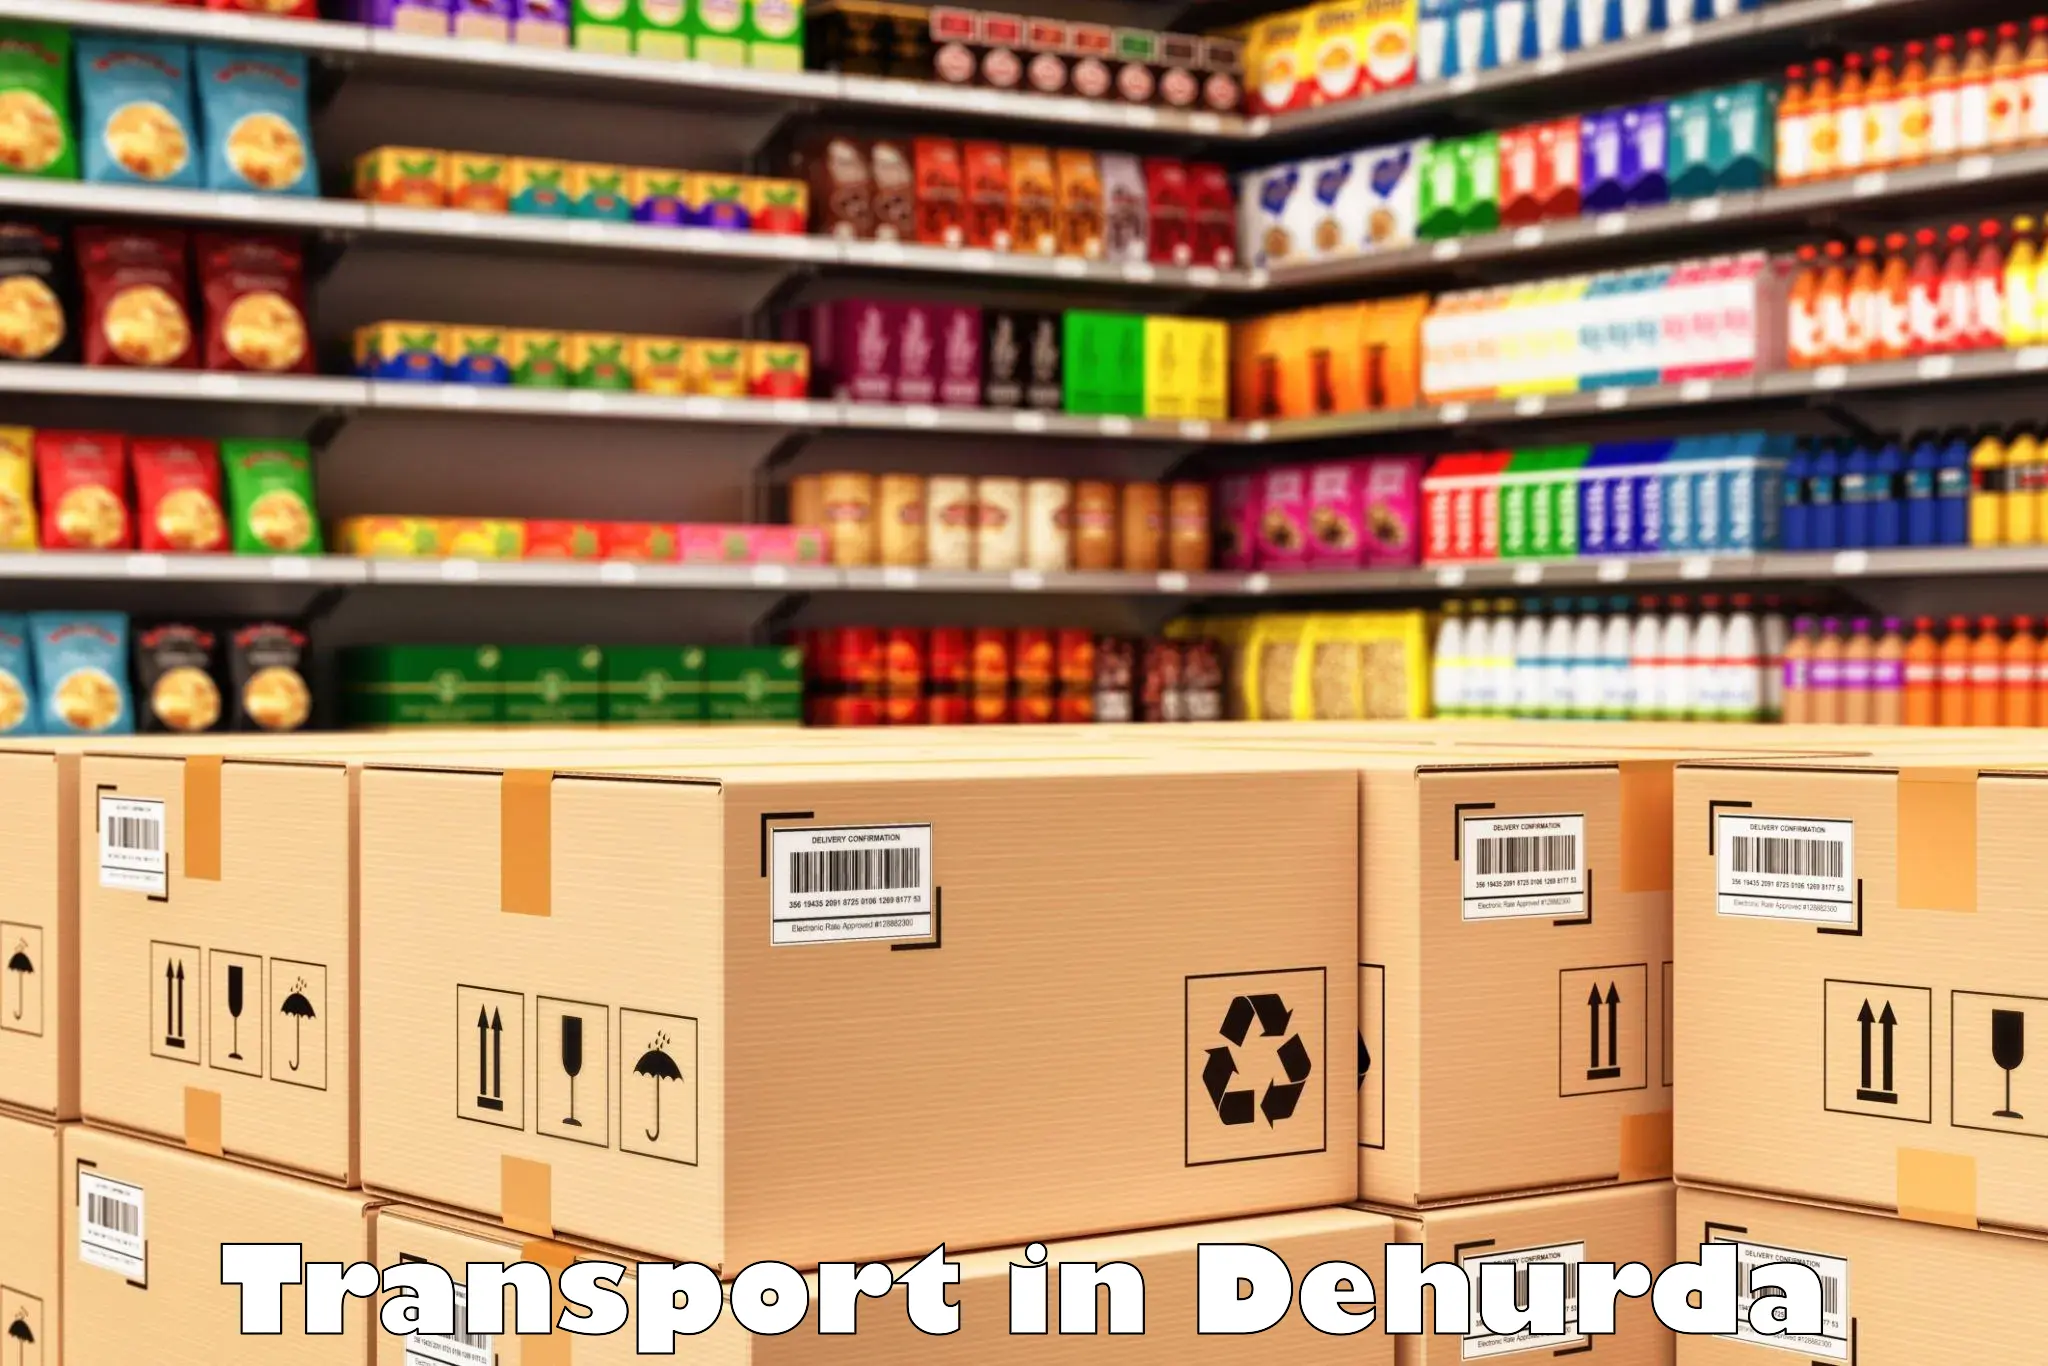 Logistics transportation services in Dehurda